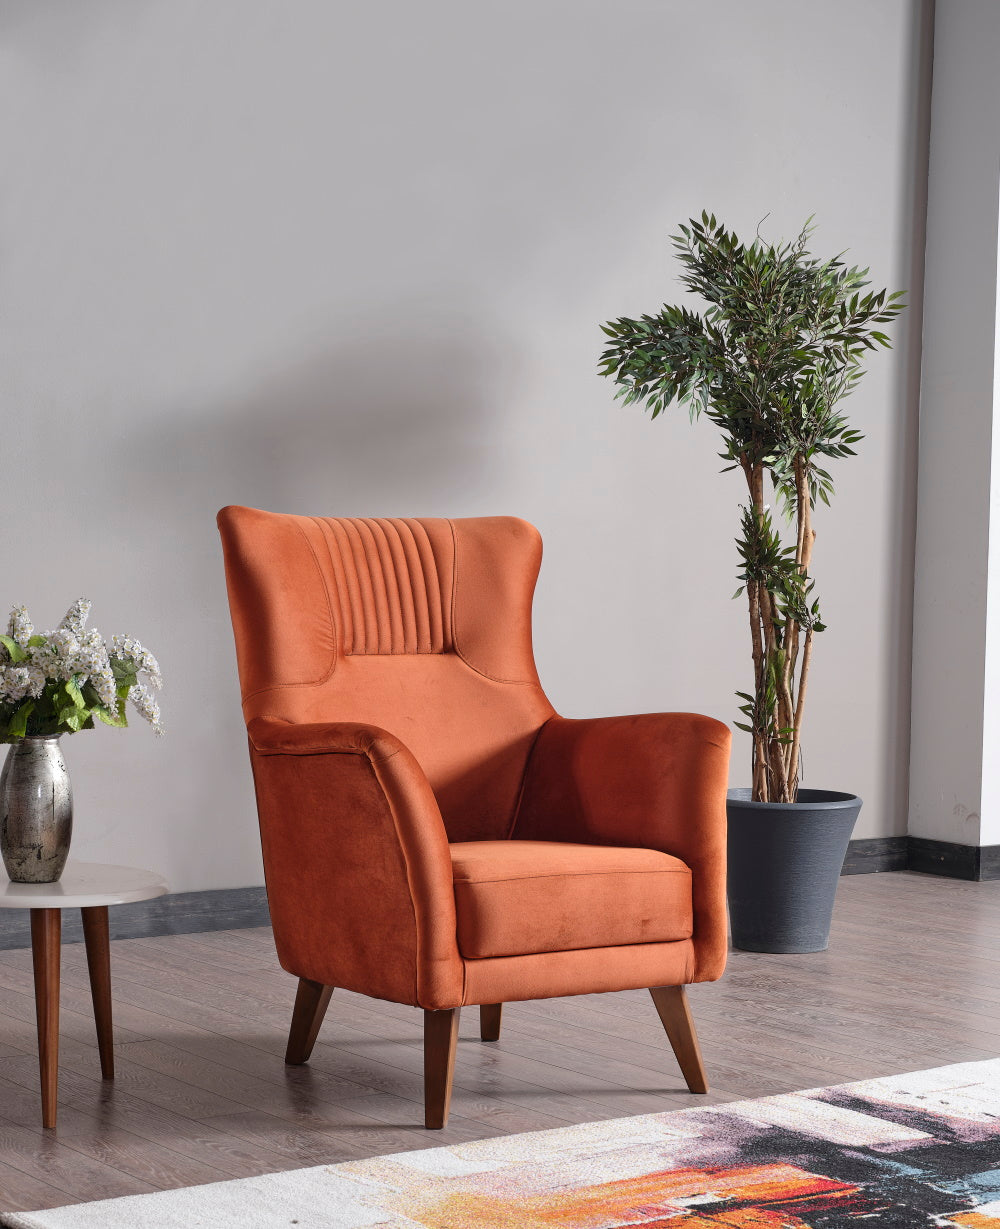 Alyans Chair Orange